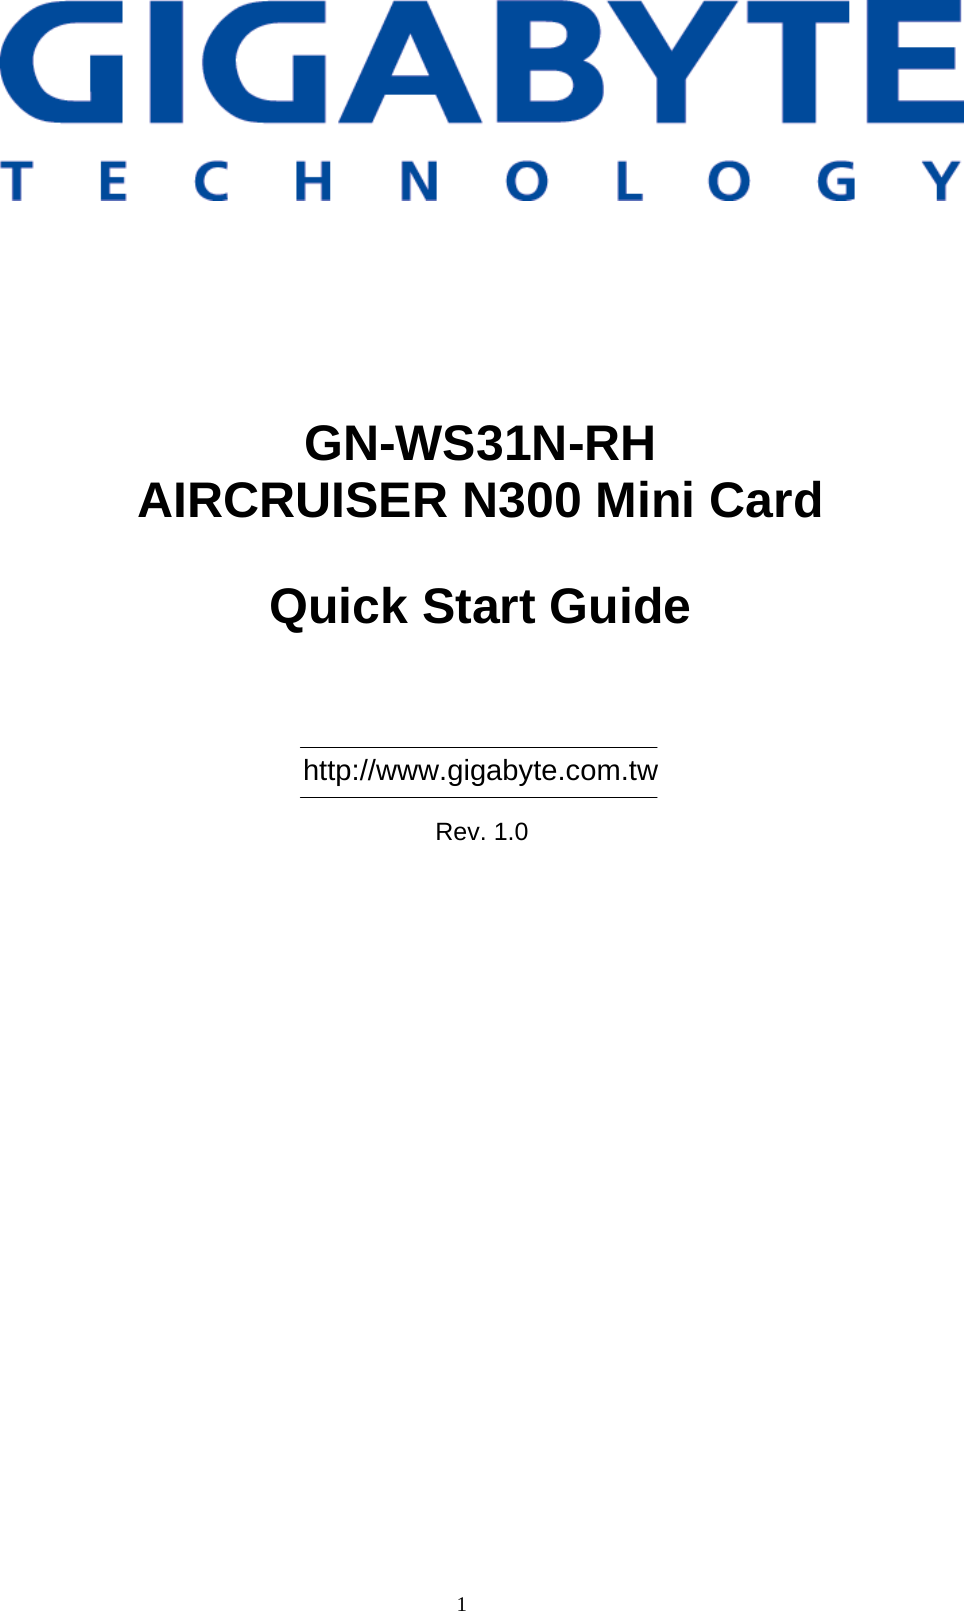                 GN-WS31N-RH AIRCRUISER N300 Mini Card  Quick Start Guide      http://www.gigabyte.com.tw  Rev. 1.0 1  